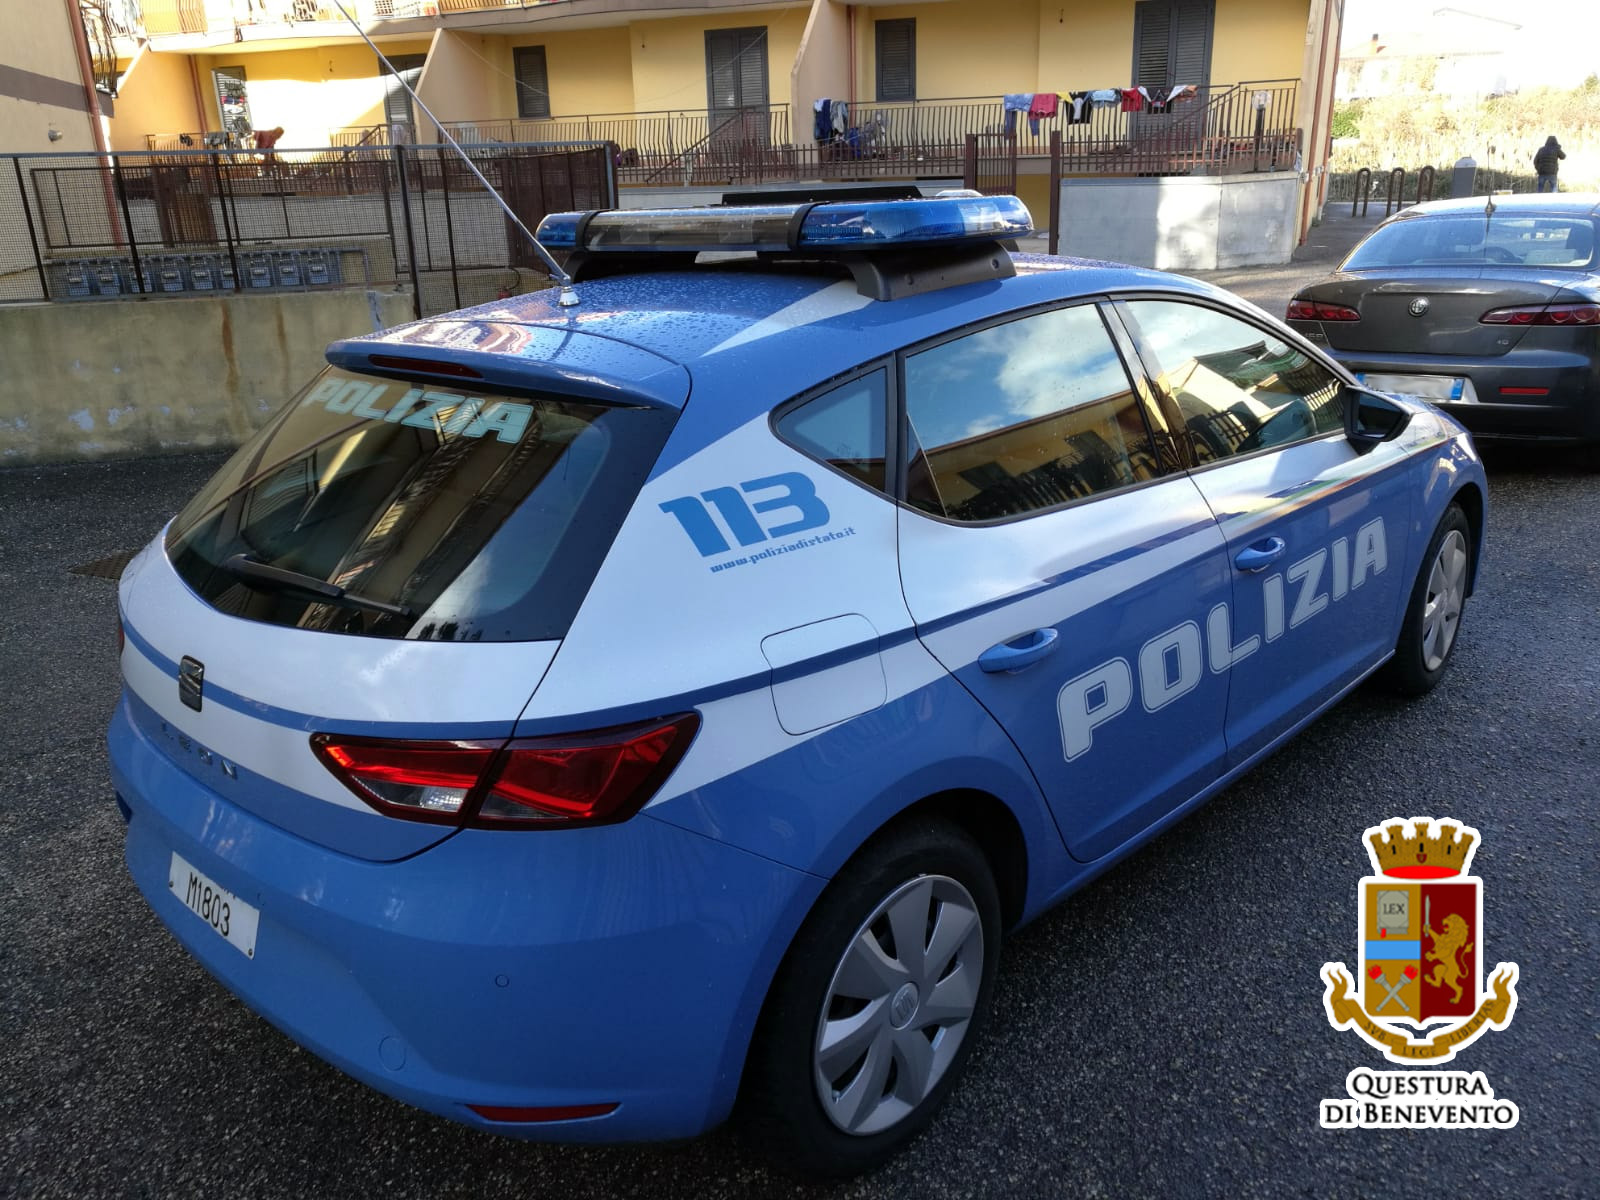 Autista ubriaco trasportava bambini in gita: fermato dalla Polizia di Benevento